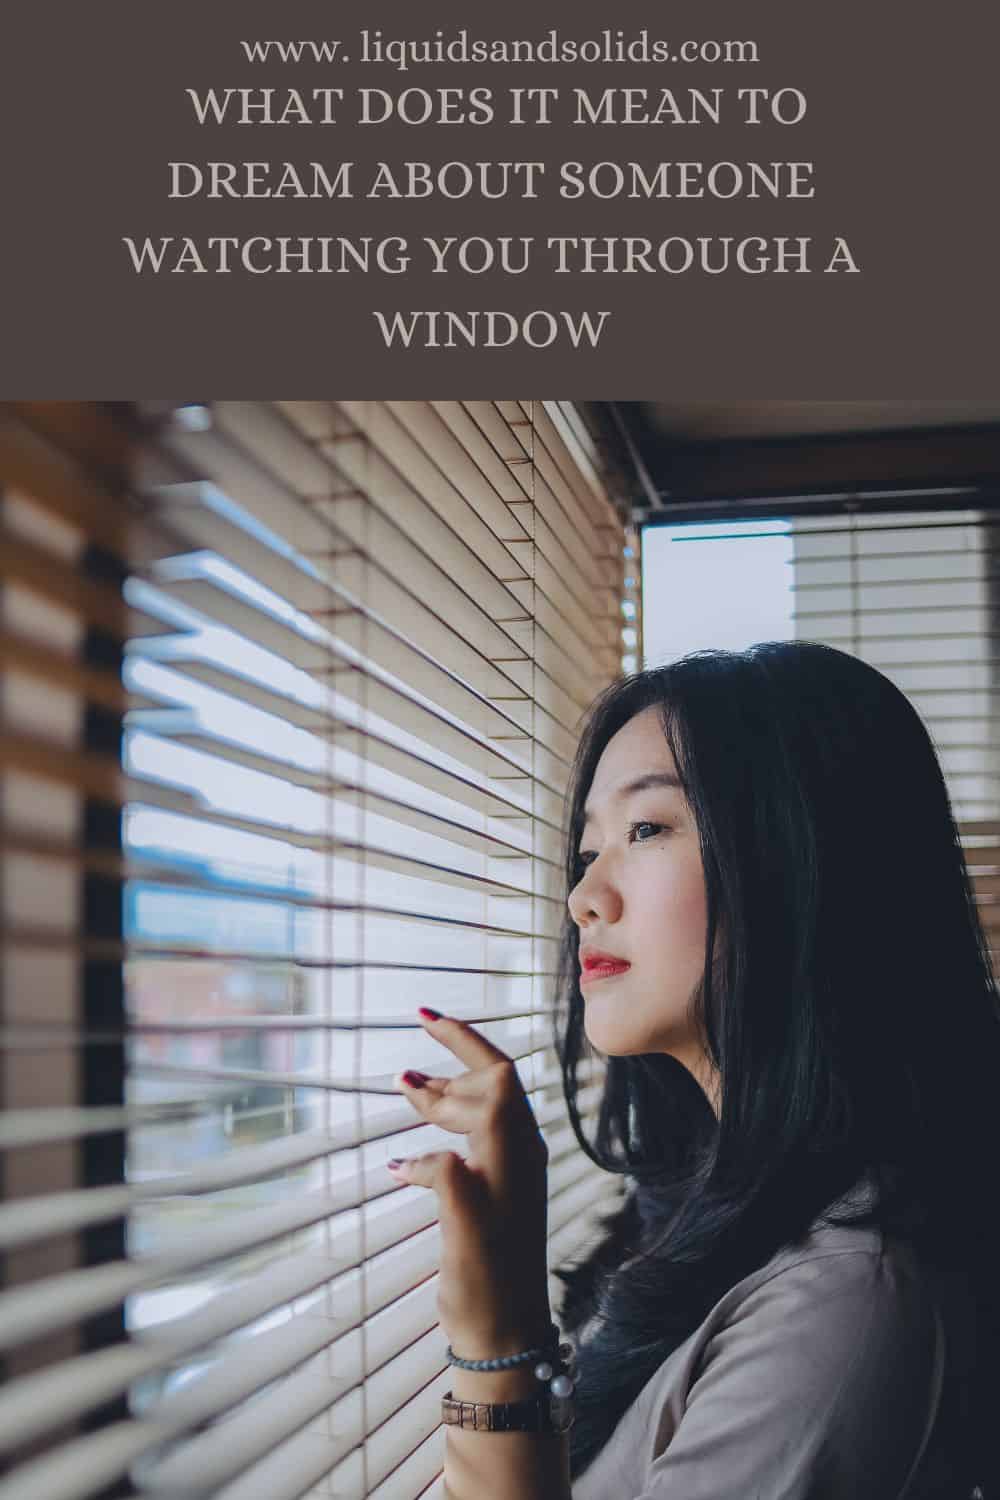  Rêve de quelqu'un qui vous regarde par la fenêtre (11 significations spirituelles)